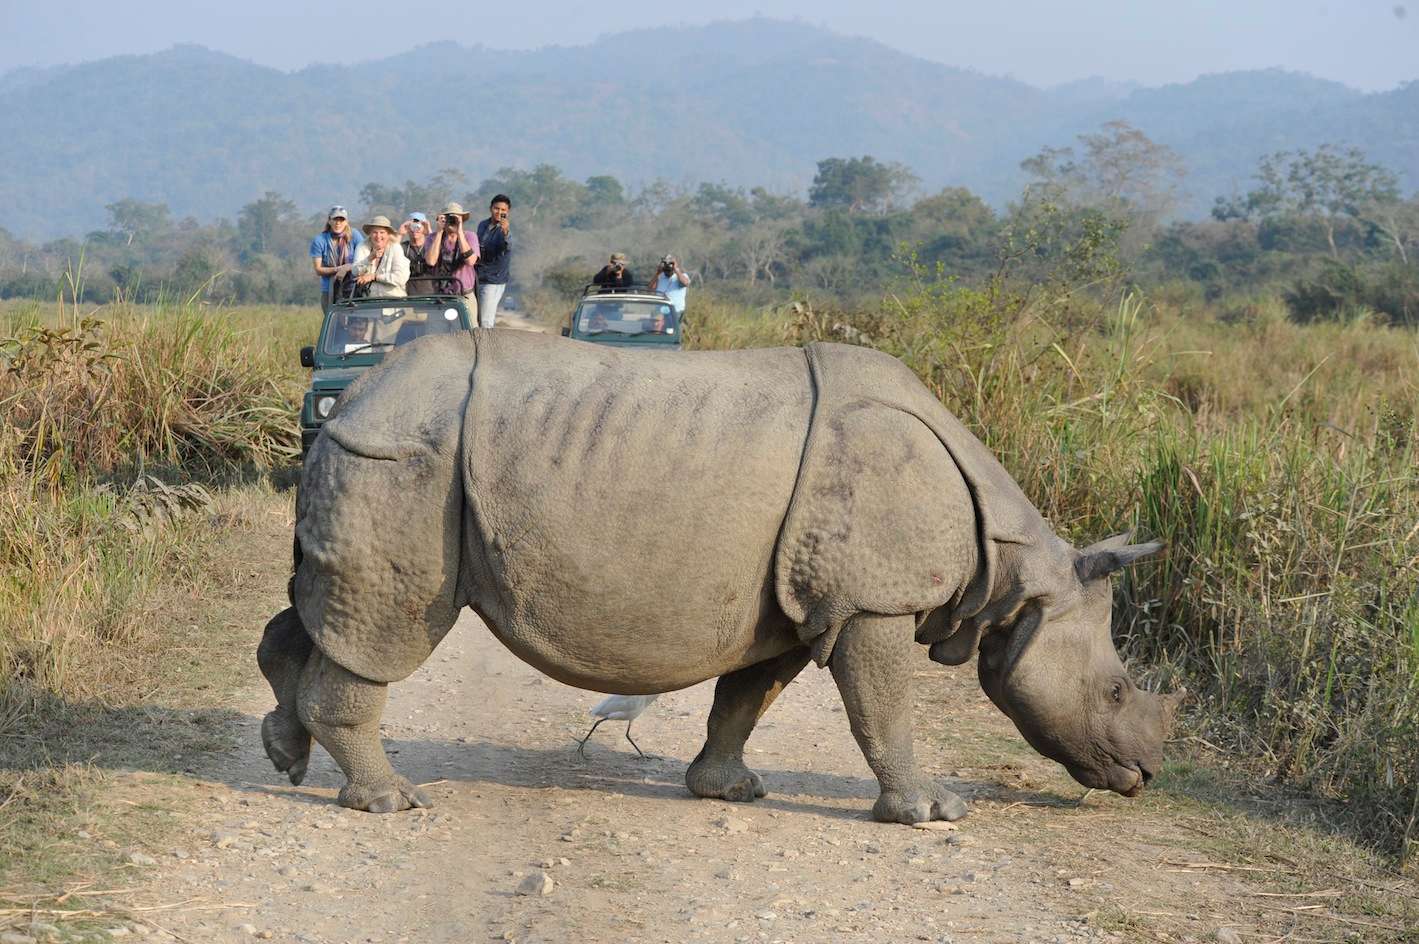 Rhino in Kaziranga National park. (c) Toby Sinclair/NHA